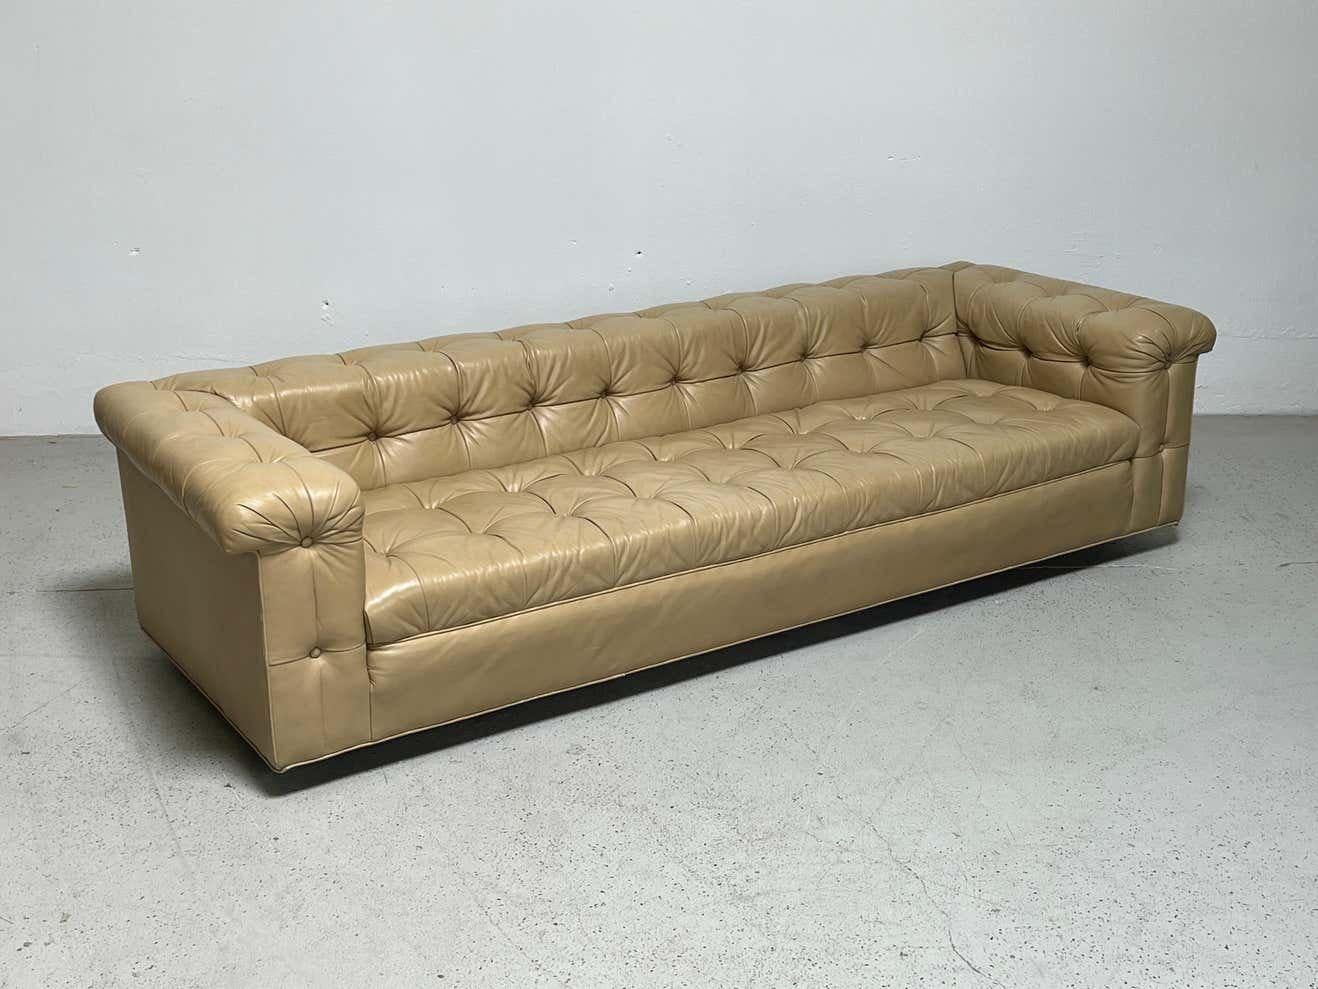 A  Party-Sofa, entworfen von Edward Wormley für Dunbar, in butterweichem, hellbraunem Original-Leder. Passendes Paar verfügbar. Individuelle Preisgestaltung. 